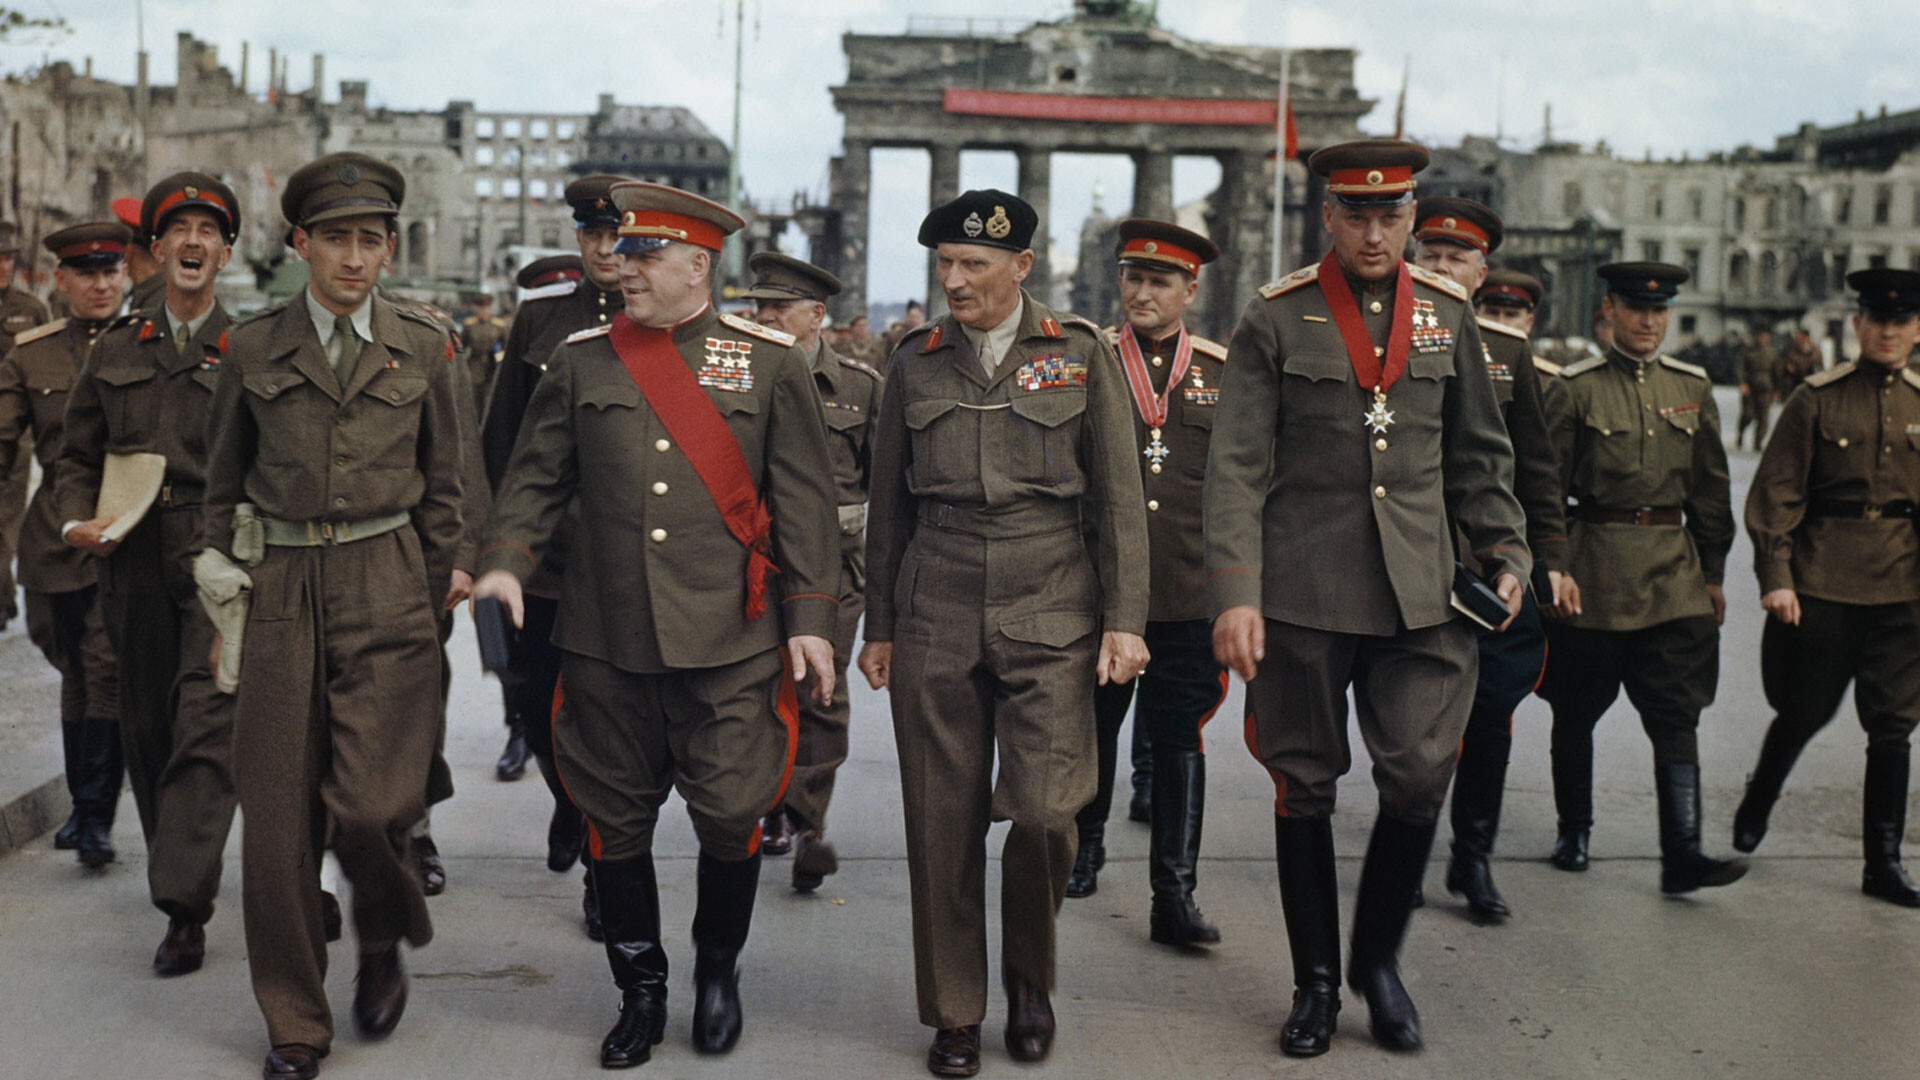 Фельдмаршал Бернард Монтгомери, маршалы Георгий Жуков и Константин Рокоссовский в Берлине 12 июля 1945 года.